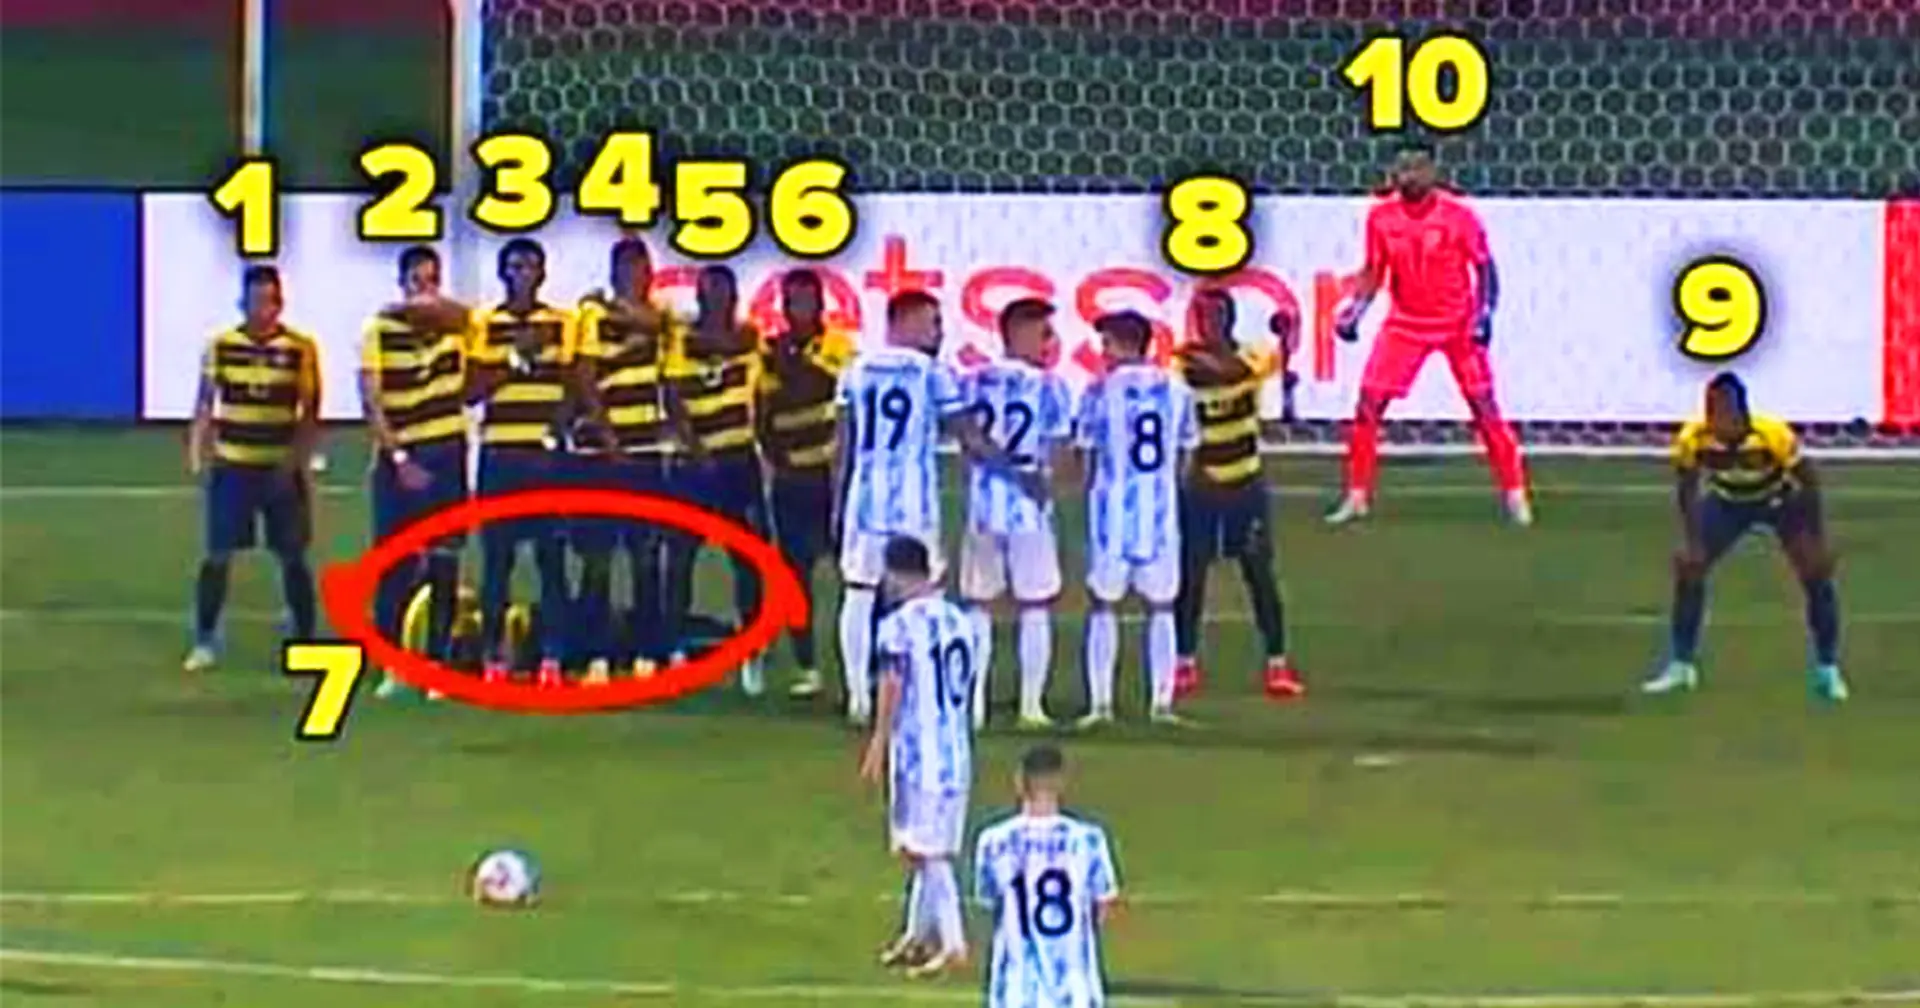 Fans waren schockiert, als sie sahen, wie viele ecuadorianische Spieler versuchten, bei Leo Messis Freistoß zu verteidigen